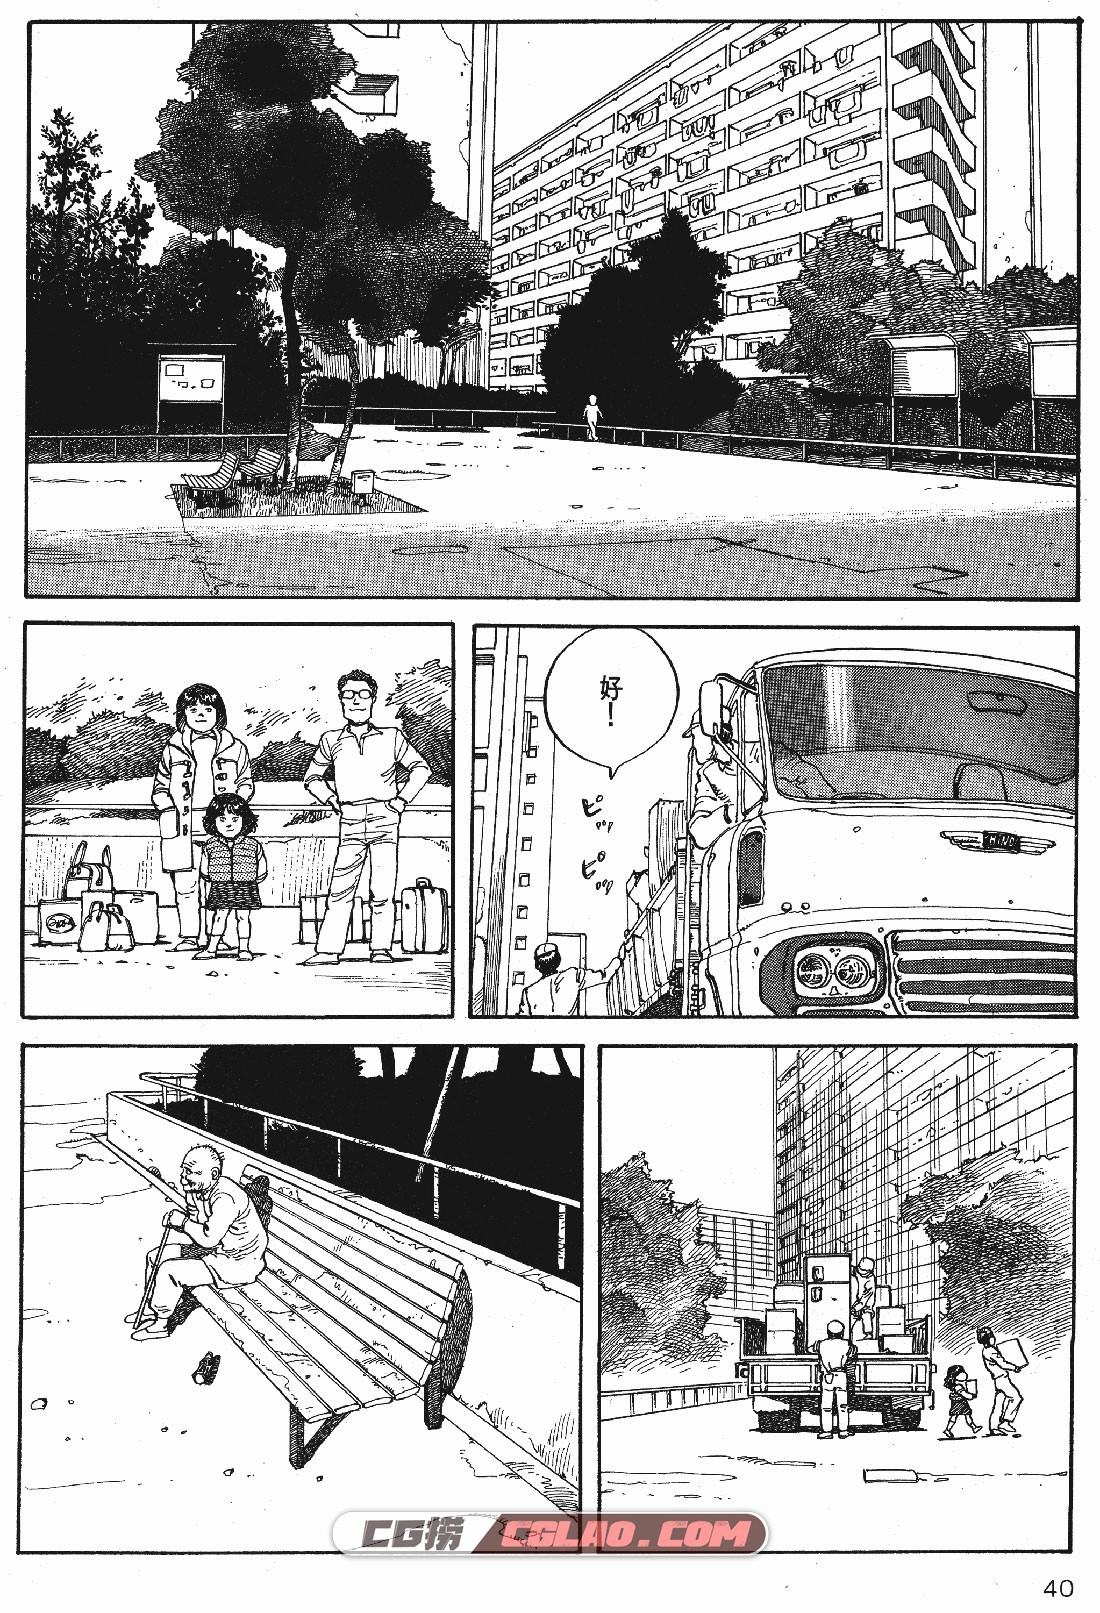 童梦 大友克洋 全一册 日本经典少年漫画百度网盘下载,_TMMT-_0040.jpg